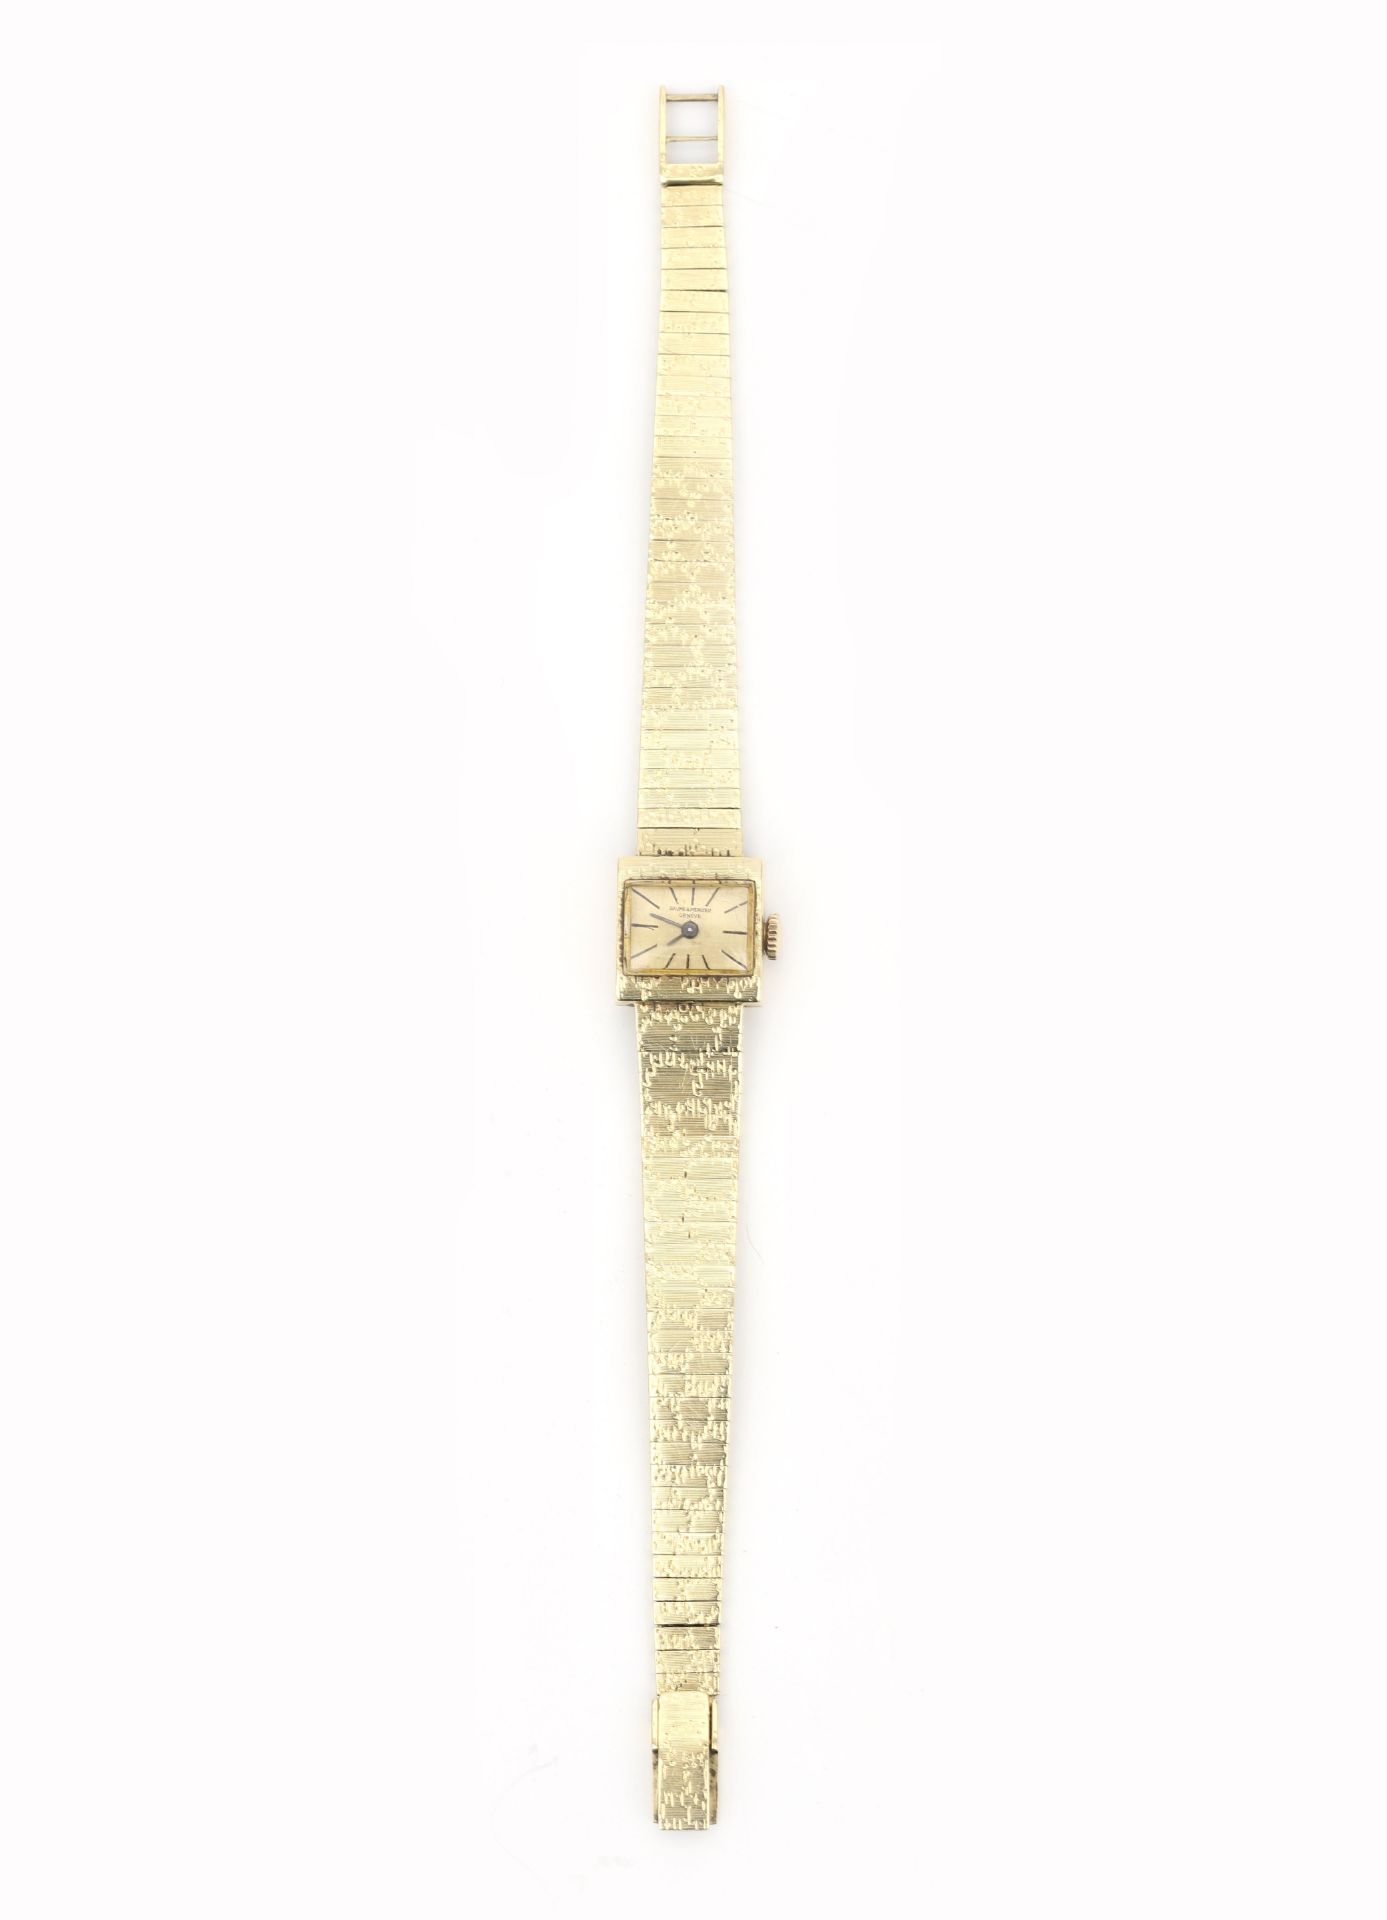 A 14 karat gold Baume & Mercier women's wristwatch  - Bild 5 aus 7